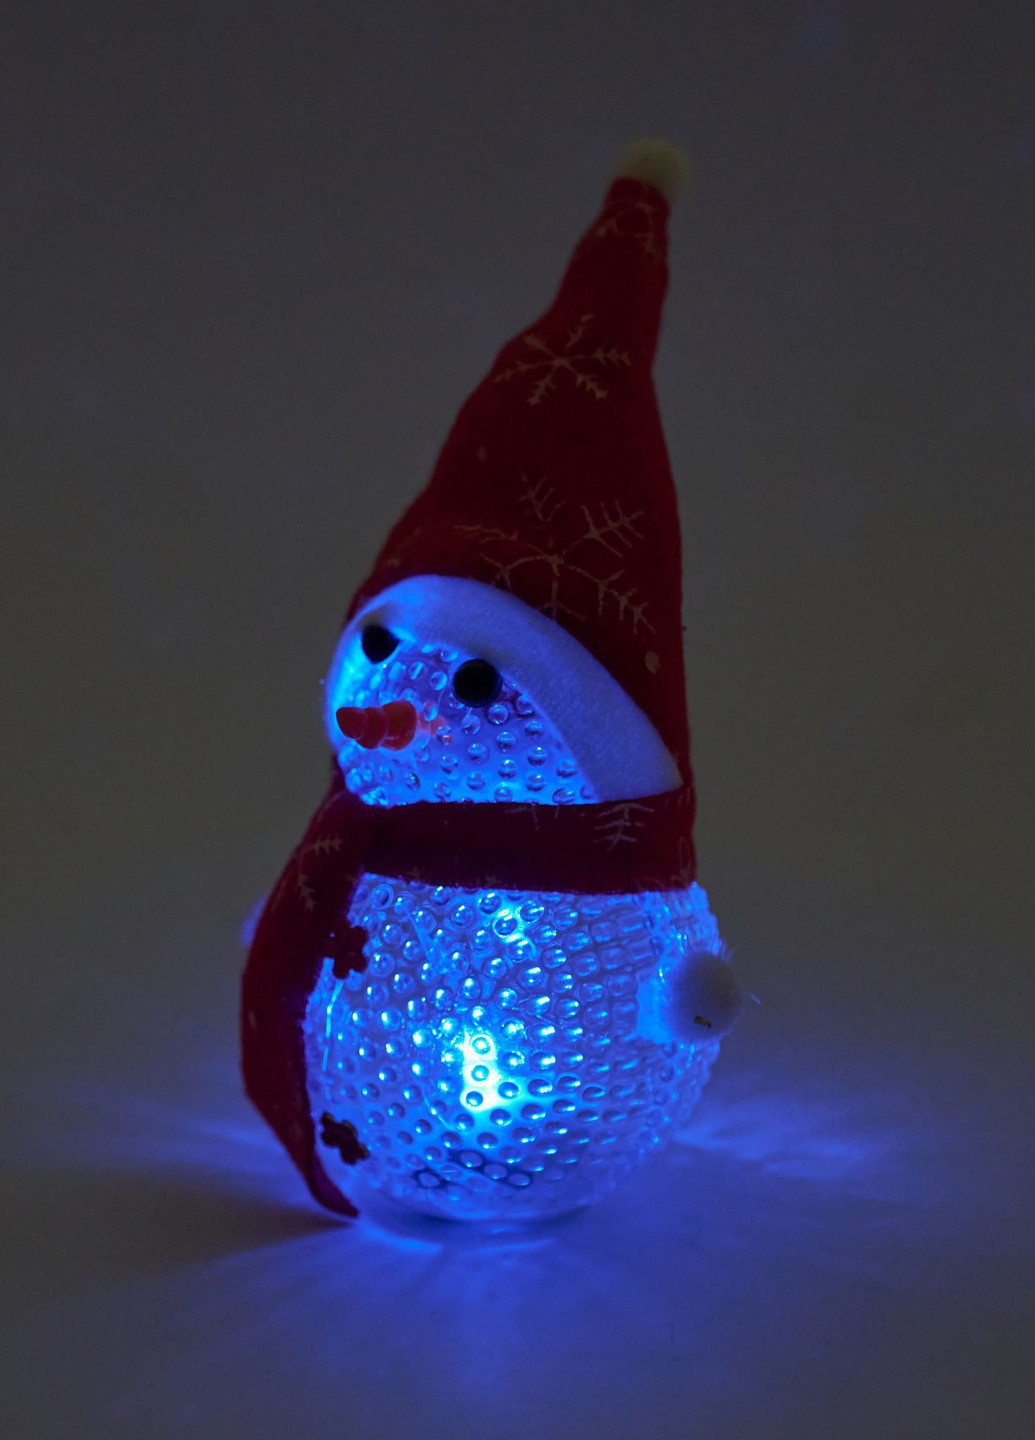 Фигурка Светящийся Снеговик Светильник ночник снеговичок новогодний рождественский декор украшение красный колпачок Led (257108452)